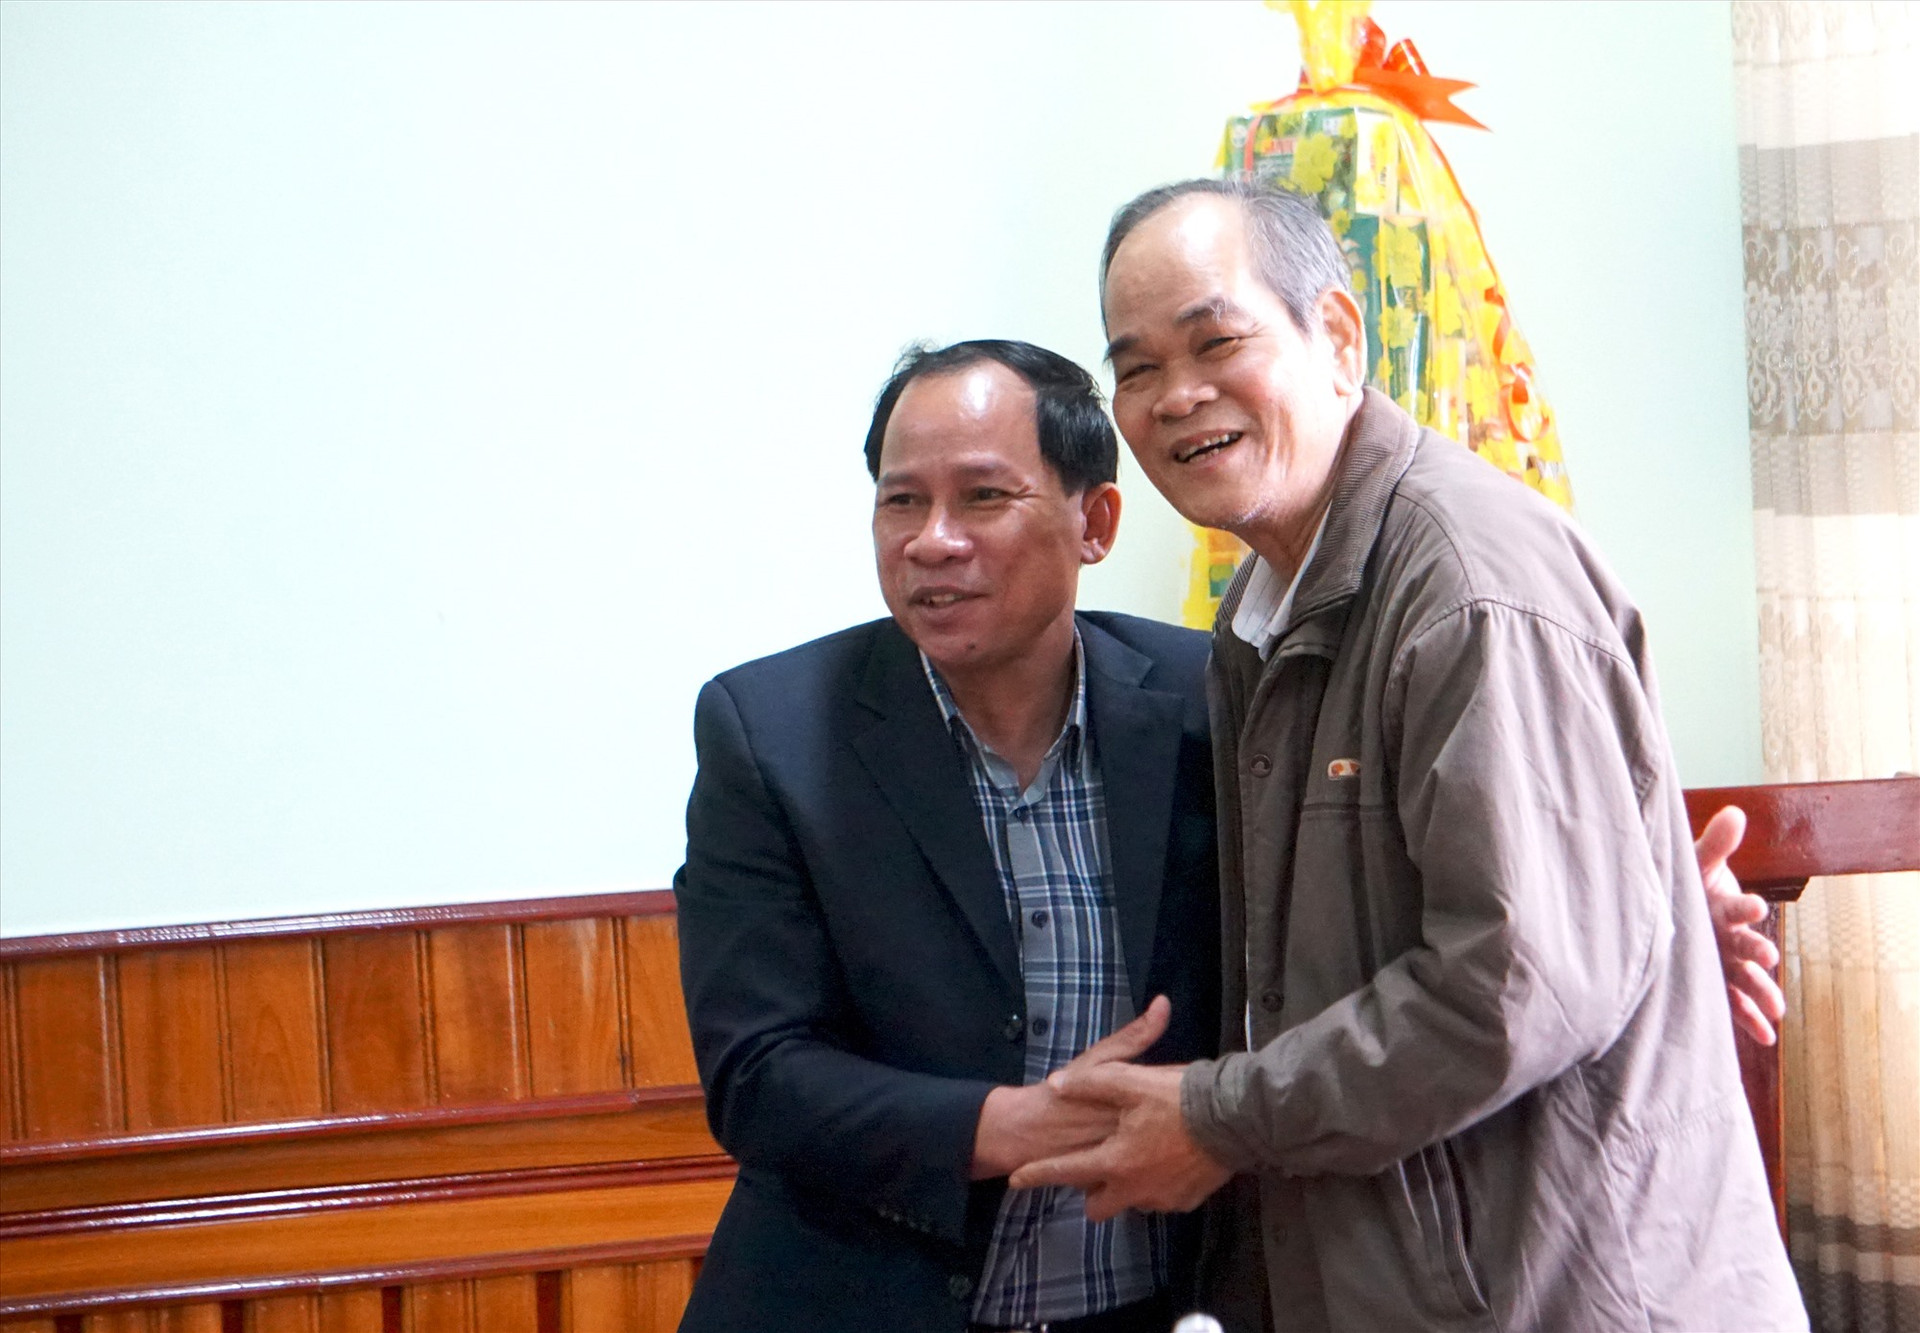 Ông Lê Thanh Hưng - Bí thư Huyện ủy Nam Trà My (bên trái) cám ơn những lời phát biểu chân tình của ông Bùi Quốc Đinh - nguyên Bí thư Thành ủy Tam Kỳ. Ảnh: NGUYỄN ĐIỆN NGỌC